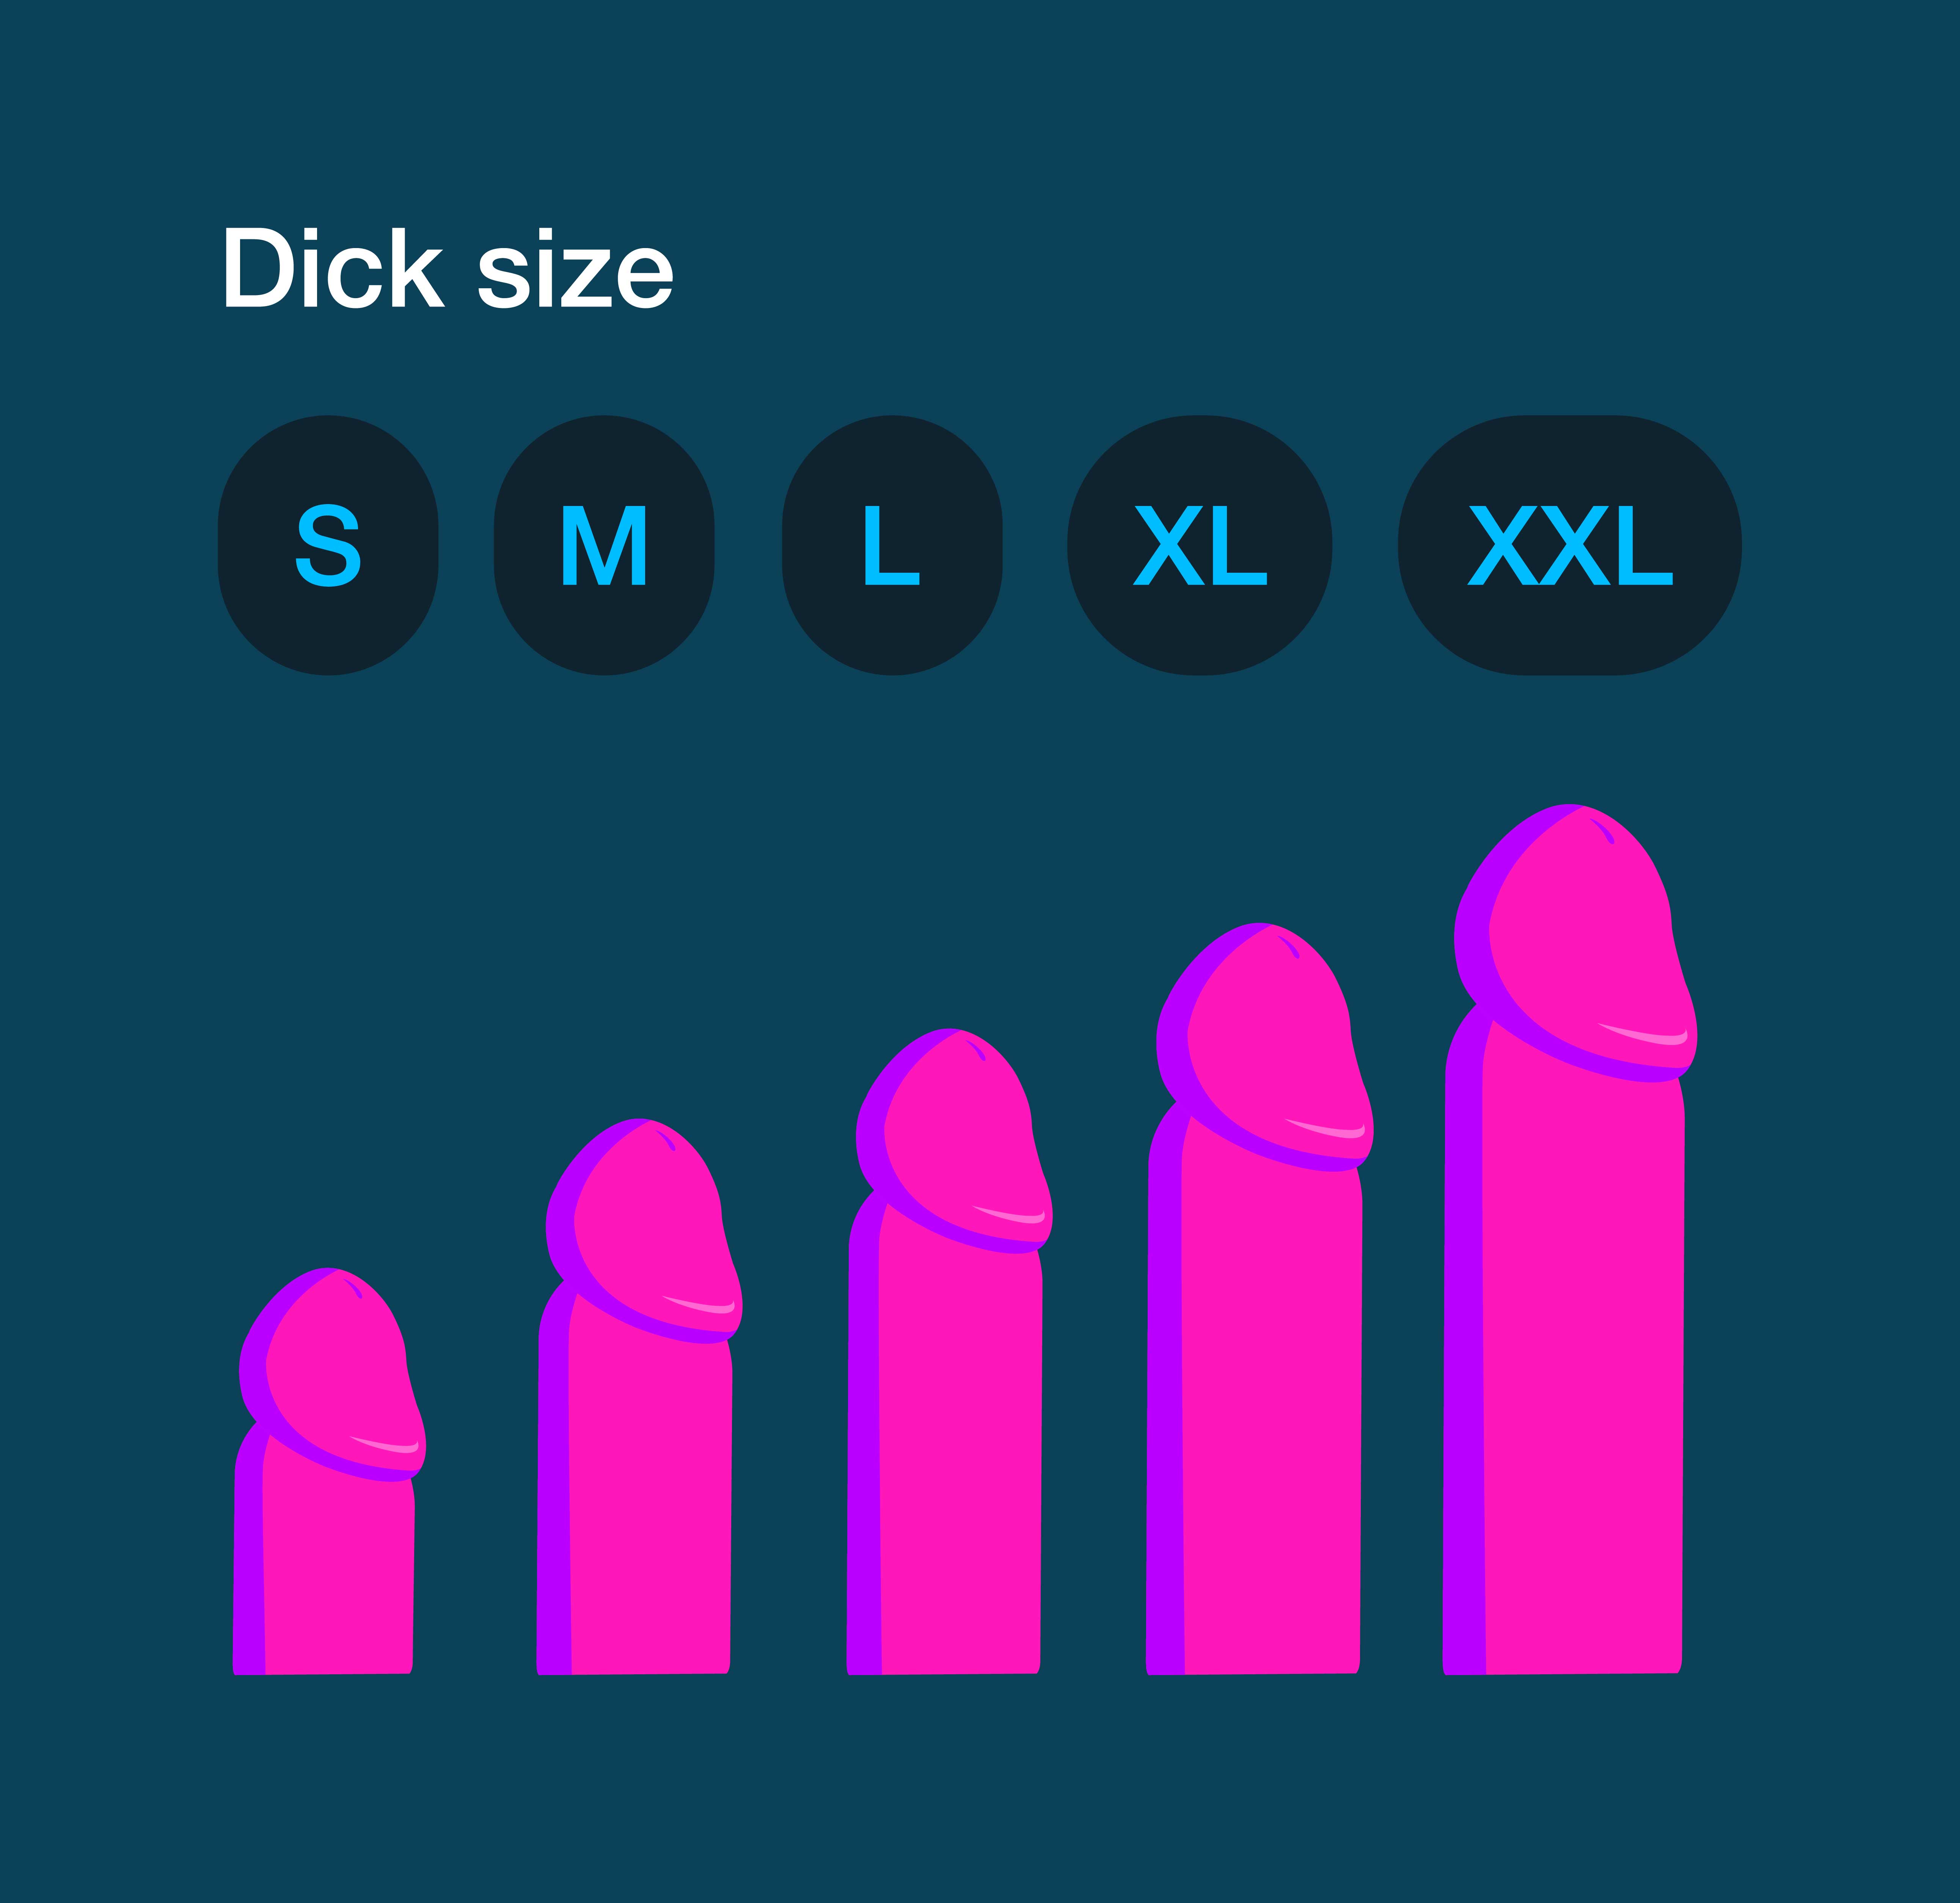 Dick size queen